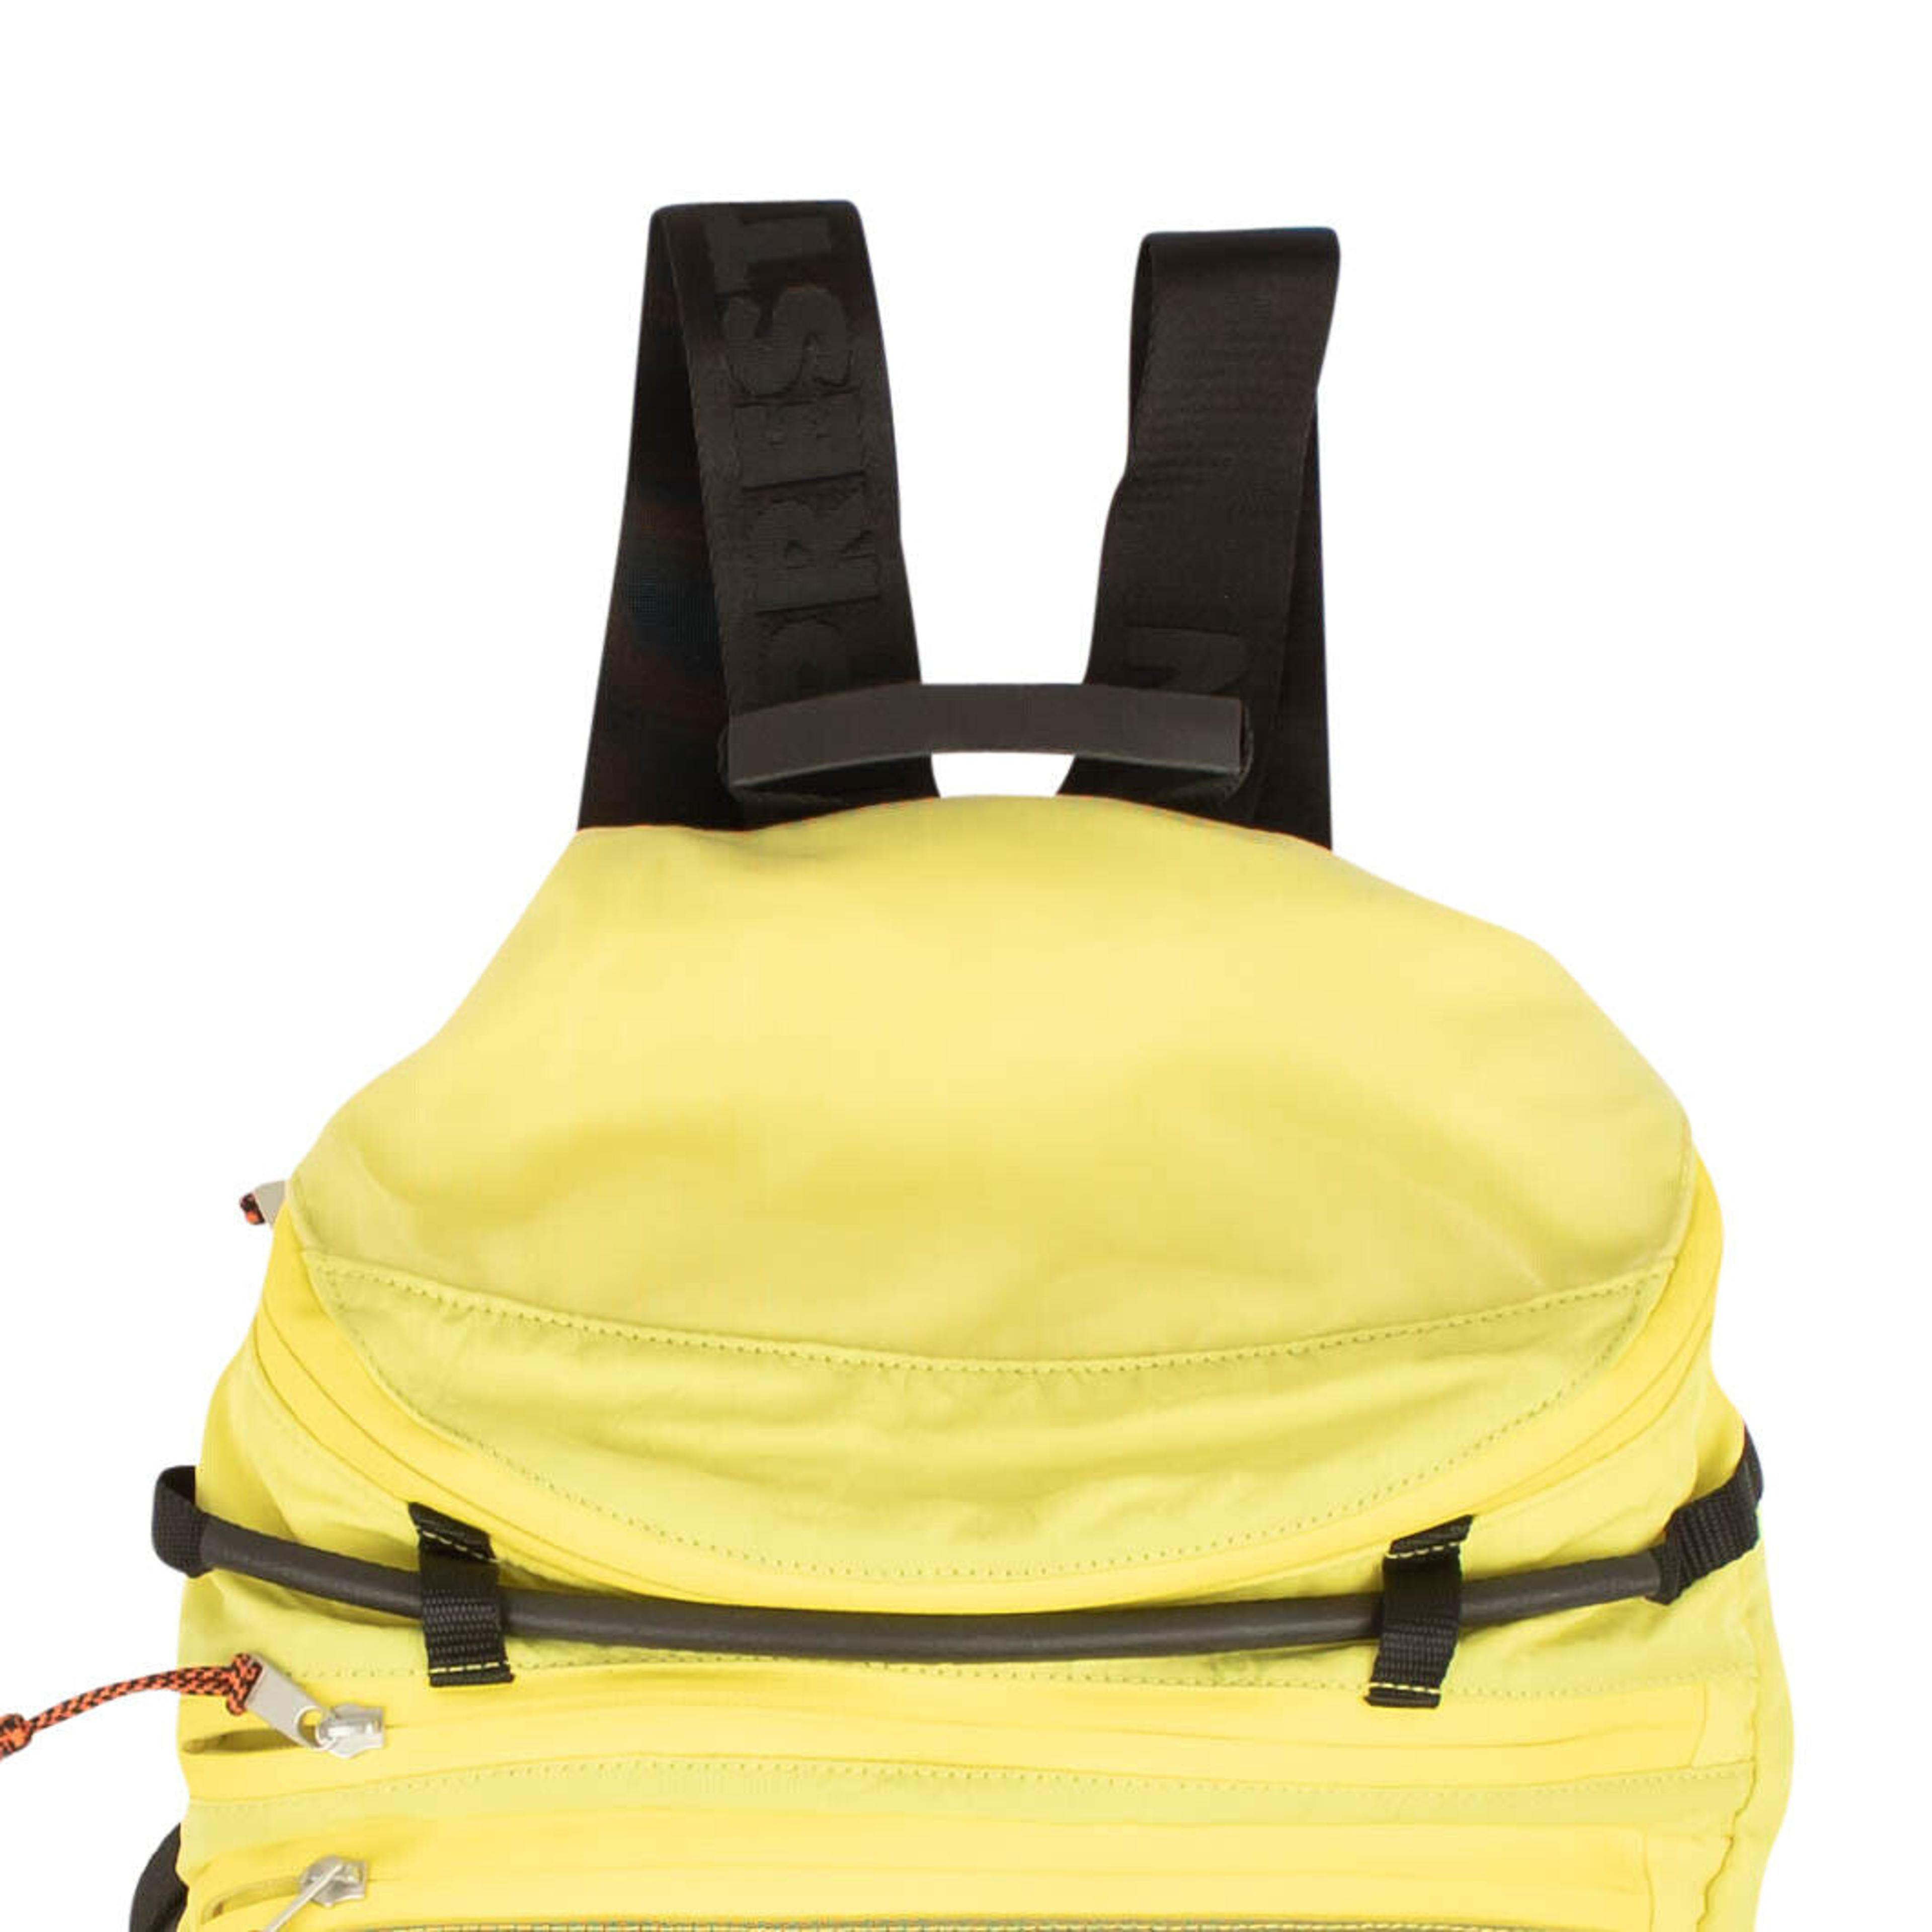 Alternate View 1 of Heron Preston Nylon Mesh Backpack - Yellow